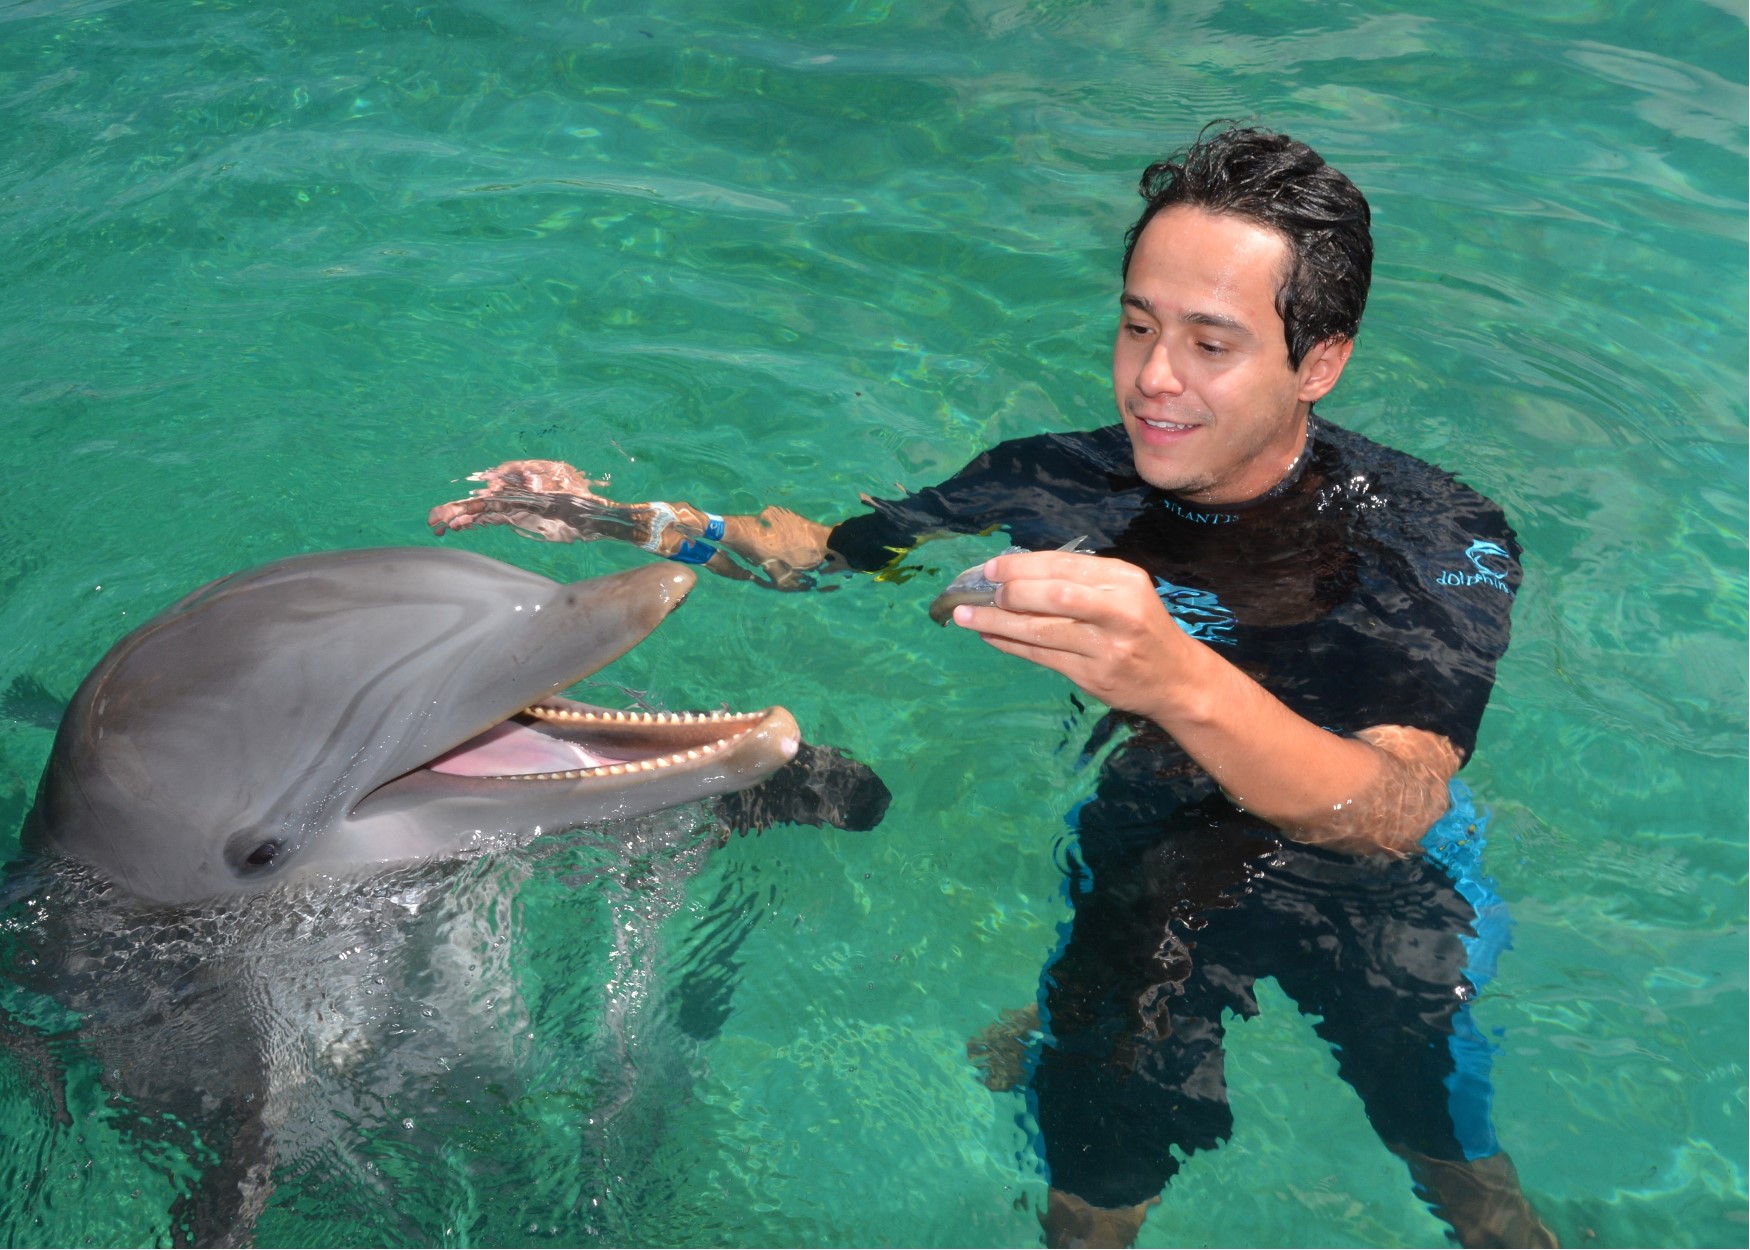 Foto do Henrique com o golfinho durante o cruzeiro da Disney, no Atlantis das Bahamas 